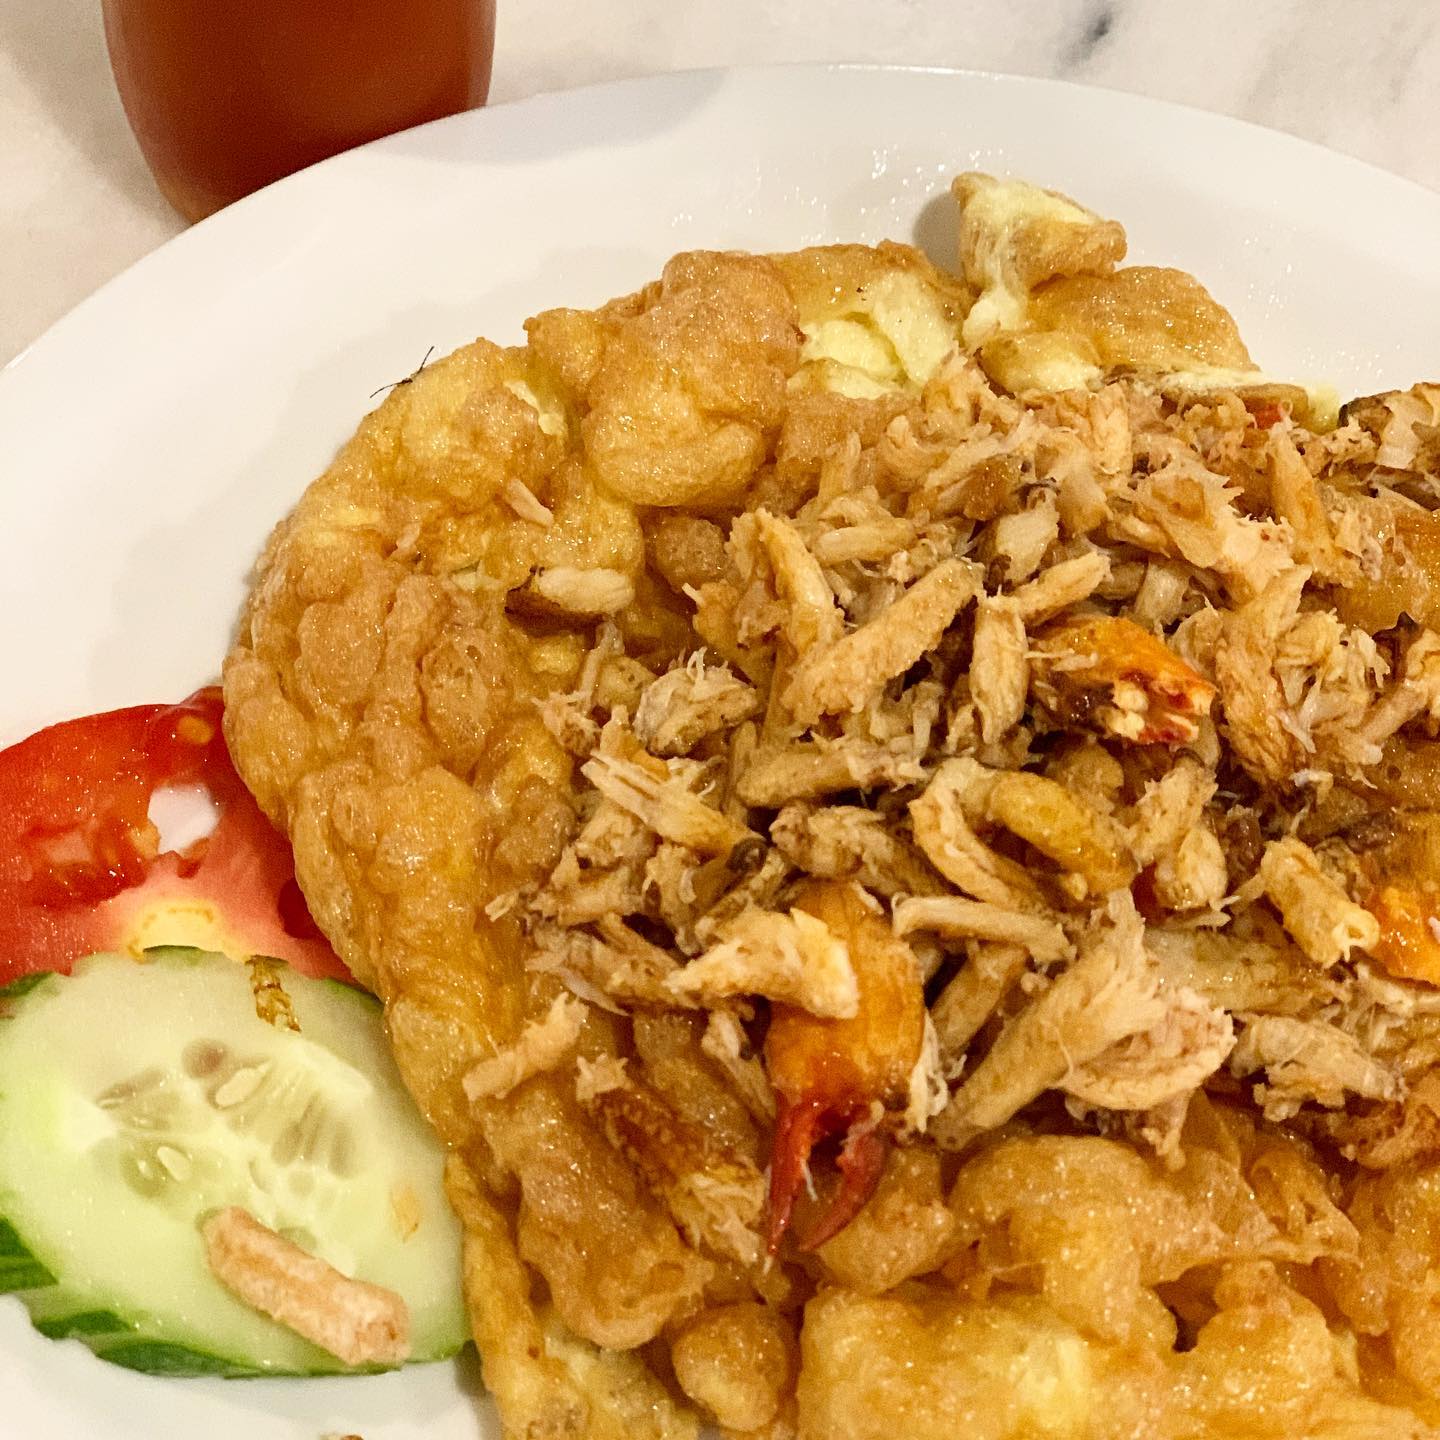 Omelette Kepiting Thailand… bukan omelette biasa… wajib coba nih!

Cek menu lainnya di sorotan atau web link di bio